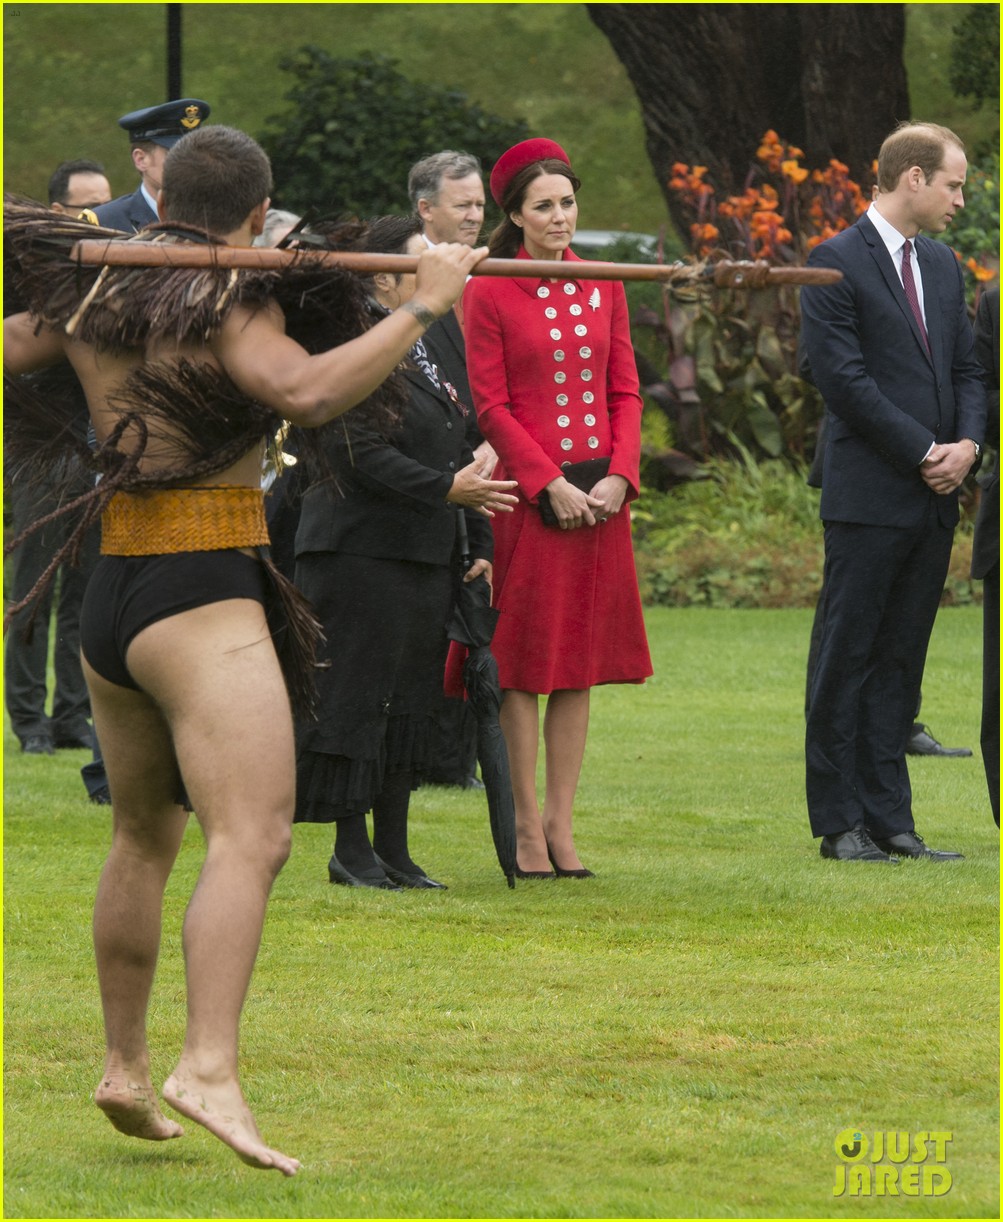 Bottomless kate pic middleton Kate Middleton